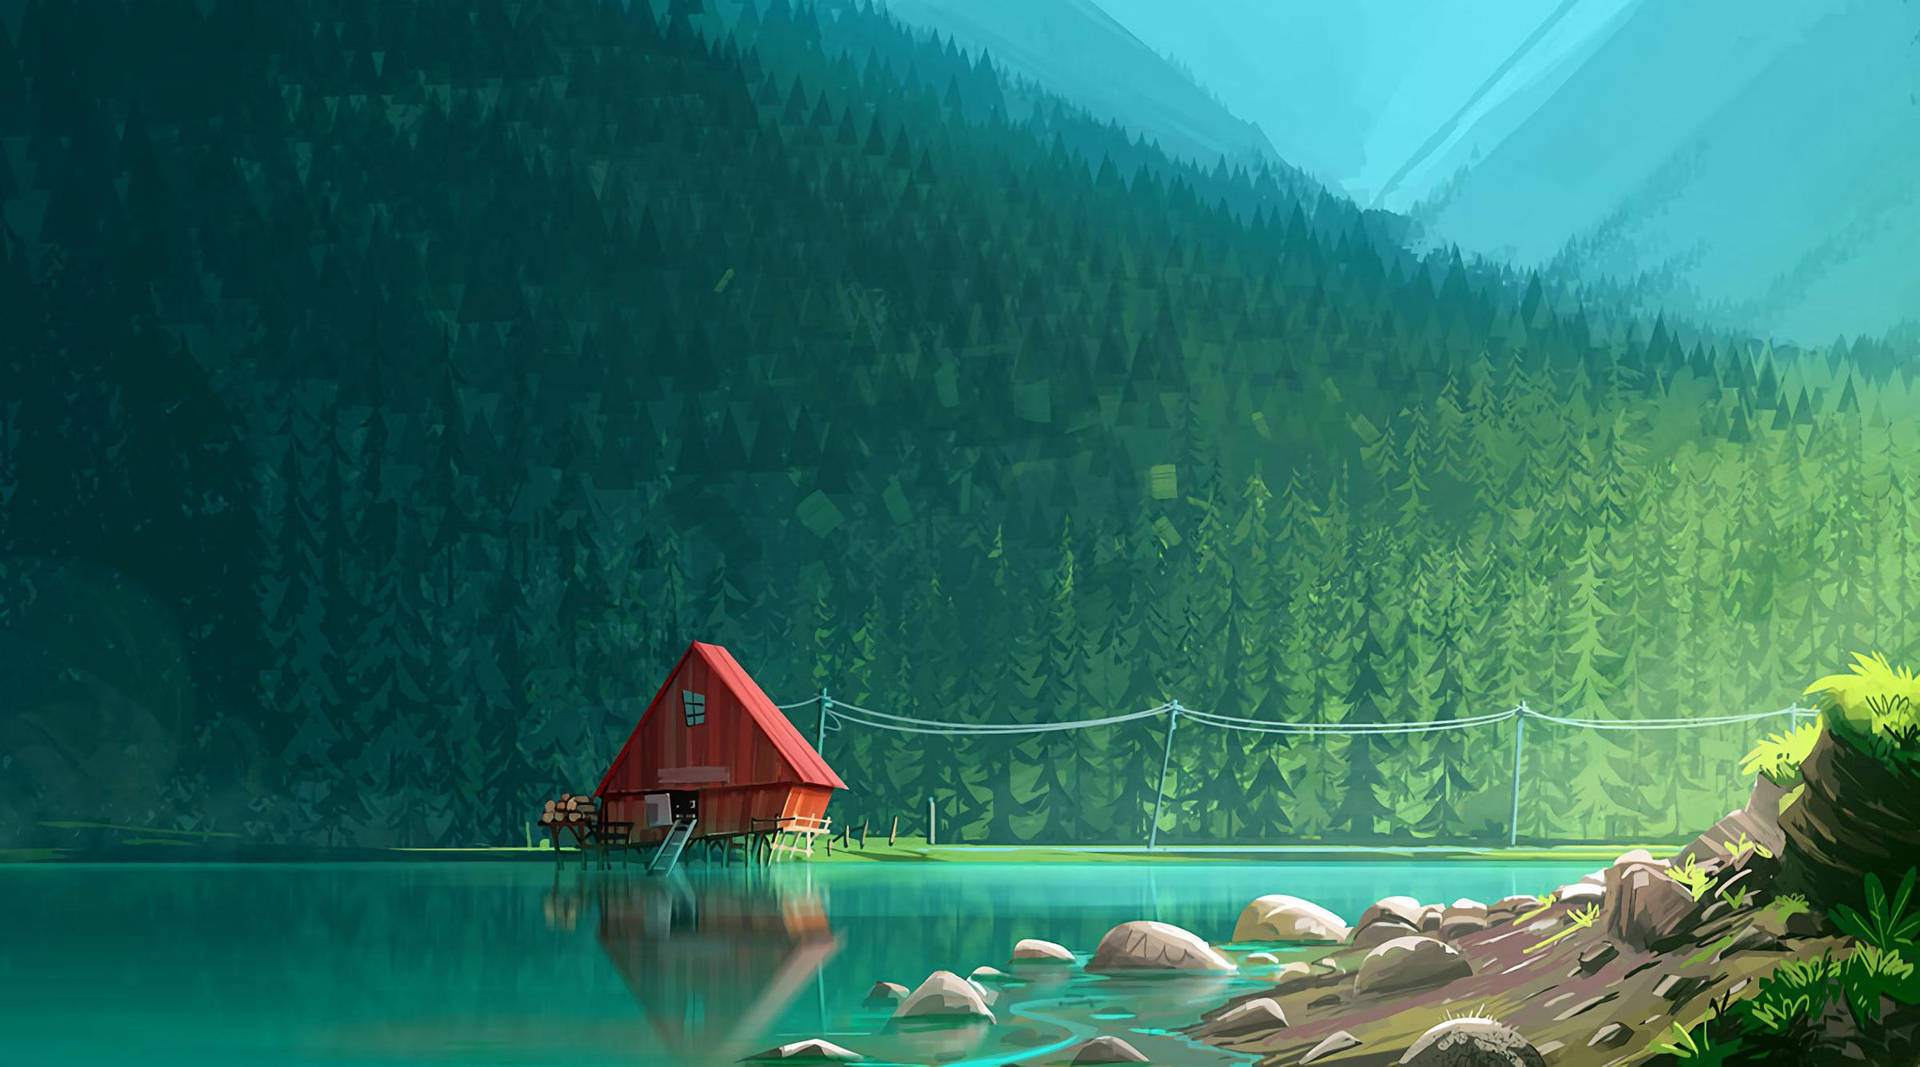 Stupendaestetica Digitale Per Sfondi Di Lago Cabin In Tinte Teal. Sfondo